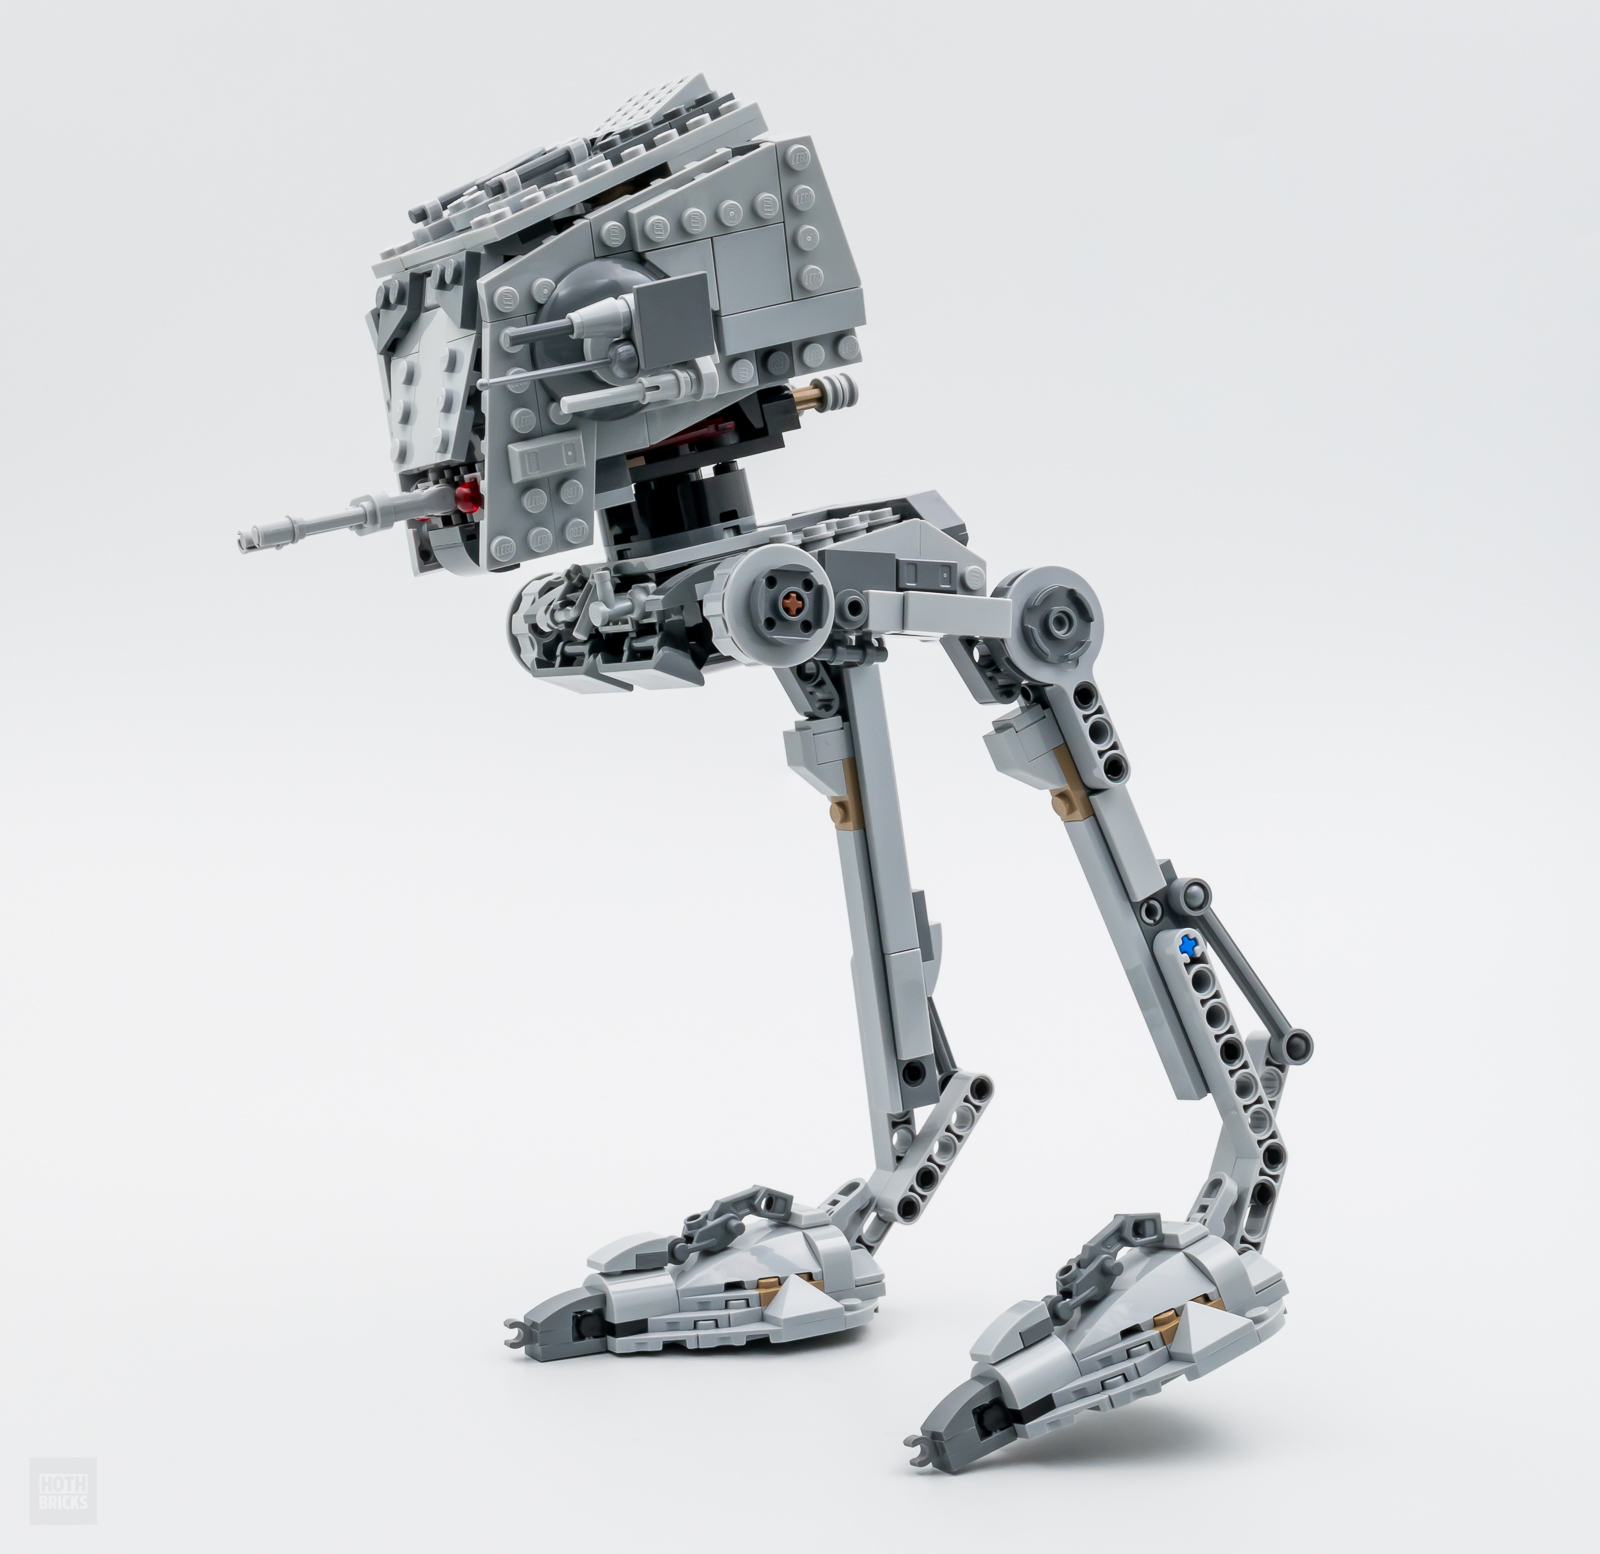 Skrive ud Samarbejdsvillig i live ▻ Review: LEGO Star Wars 75322 Hoth AT-ST - HOTH BRICKS